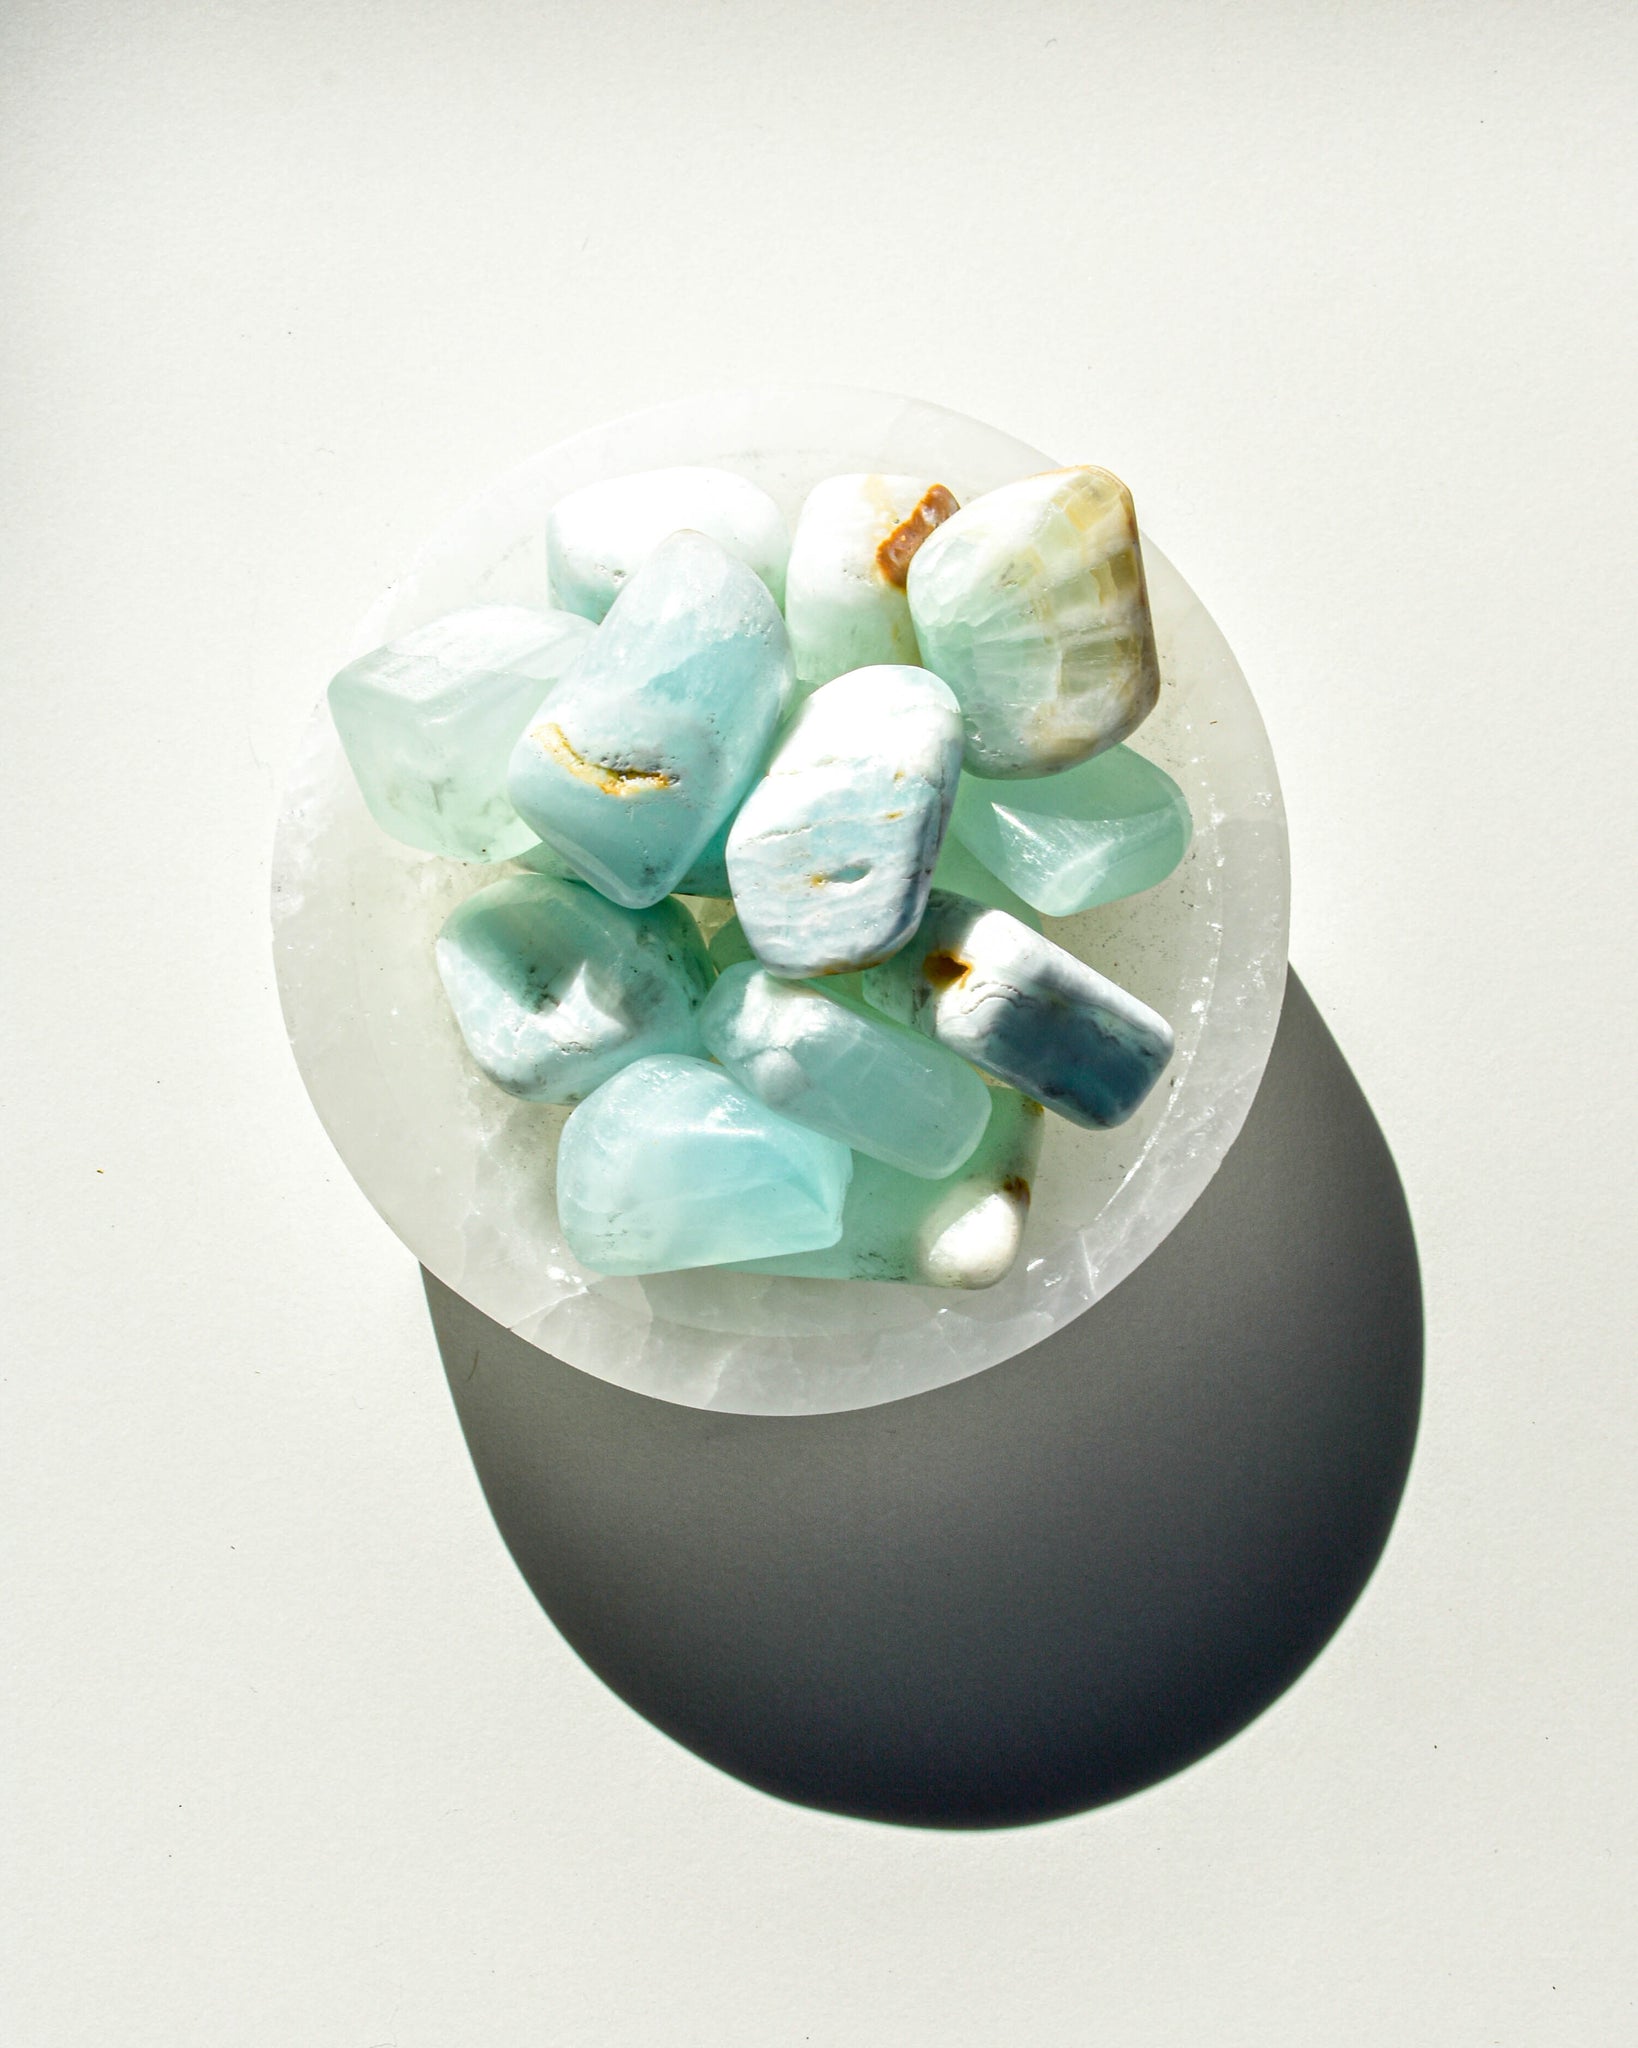 Caribbean Blue Calcite Tumbles